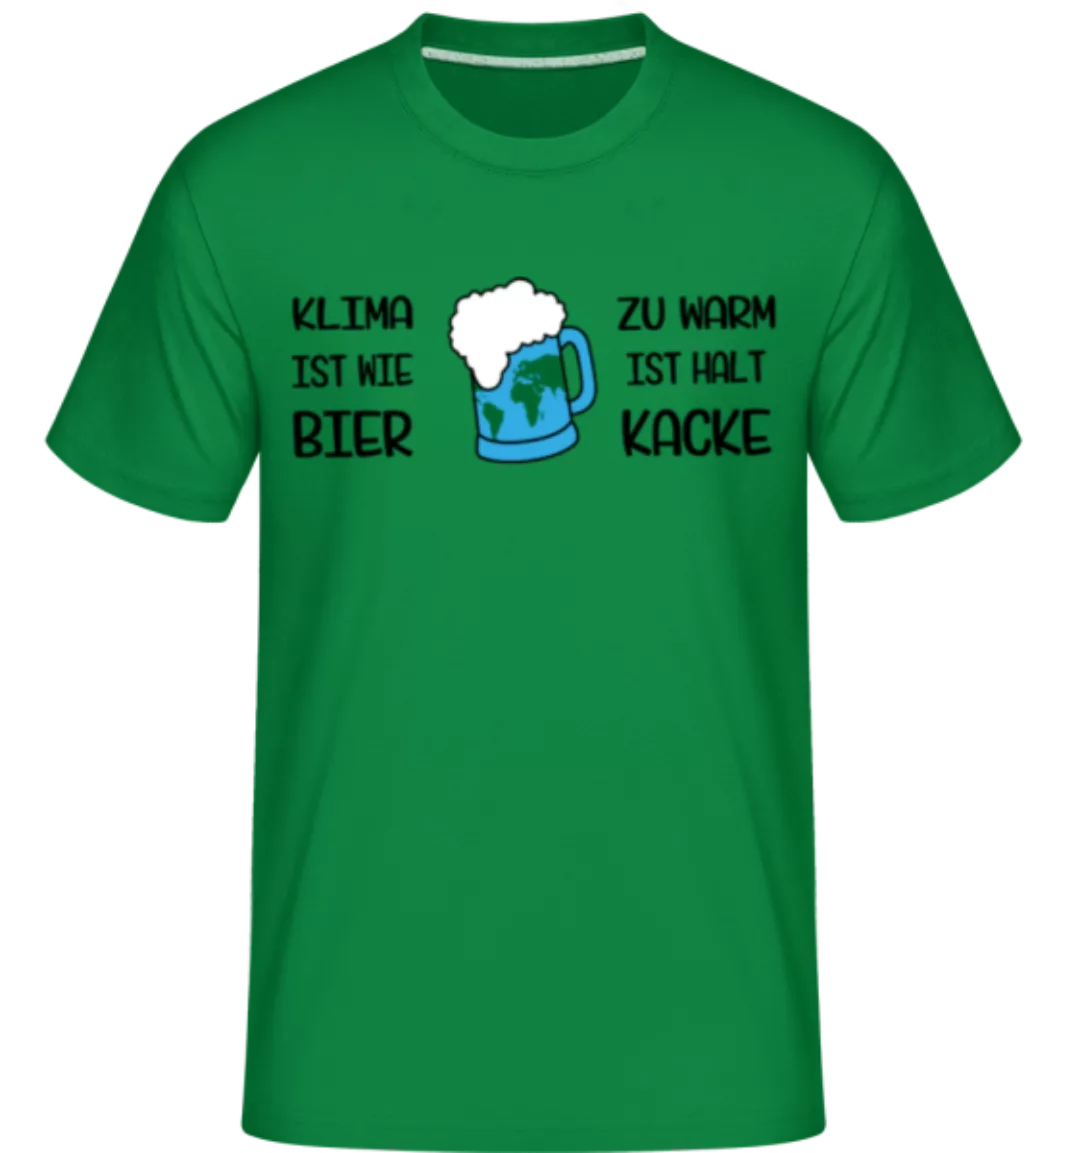 Klima Ist Wie Bier Zu Warm · Shirtinator Männer T-Shirt günstig online kaufen